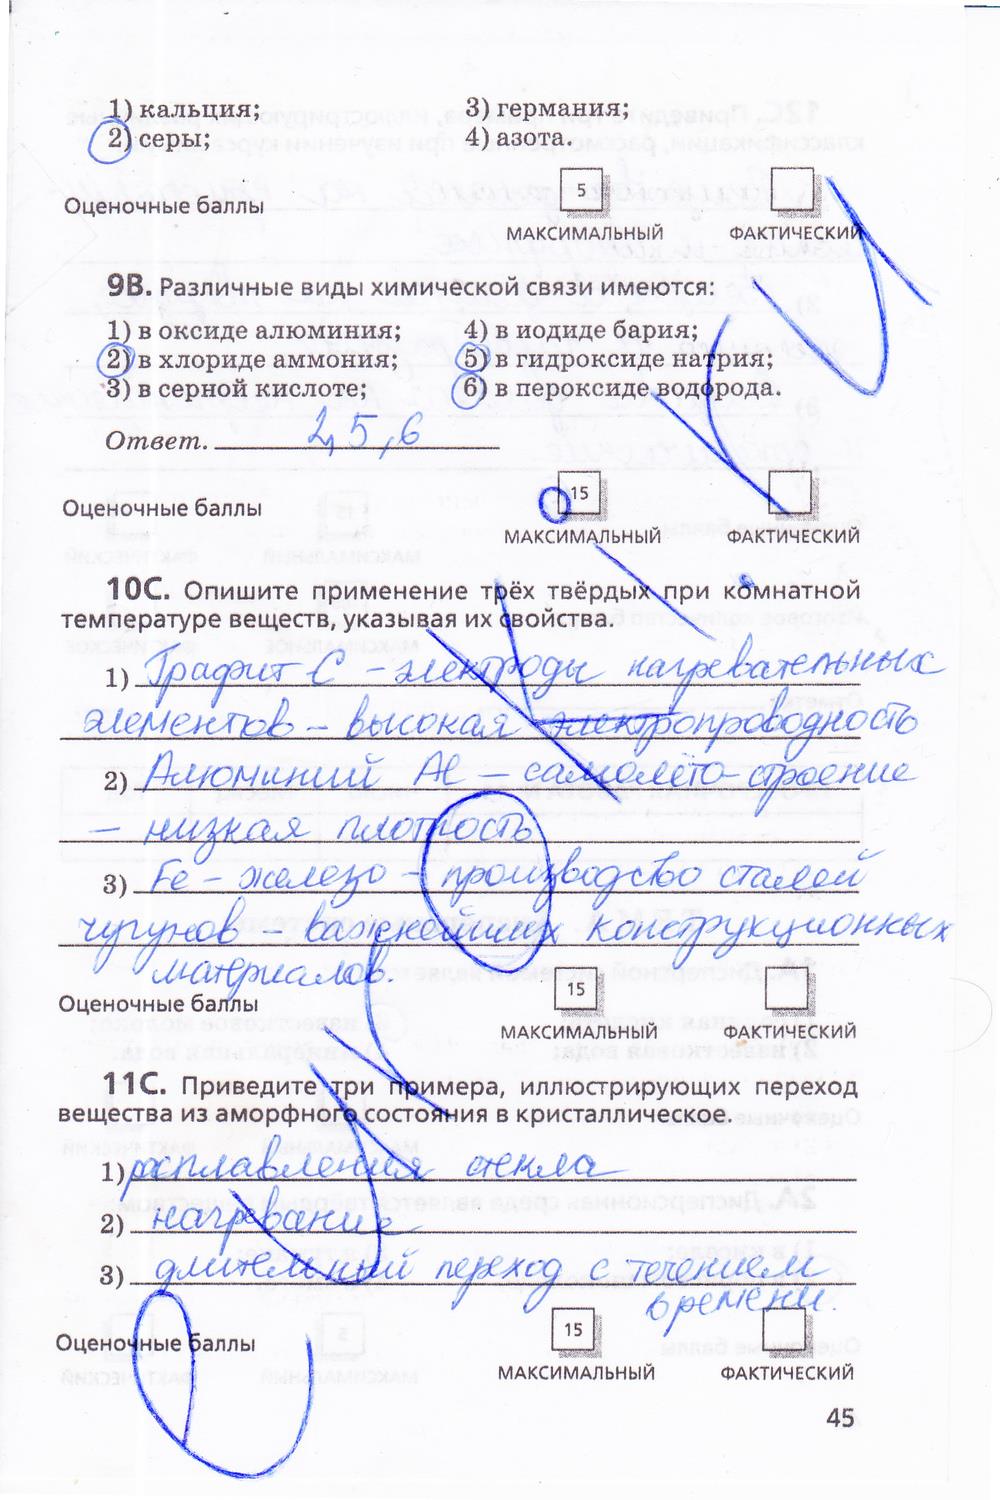 гдз 11 класс тетрадь для оценки качества знаний страница 45 химия Габриелян, Купцова